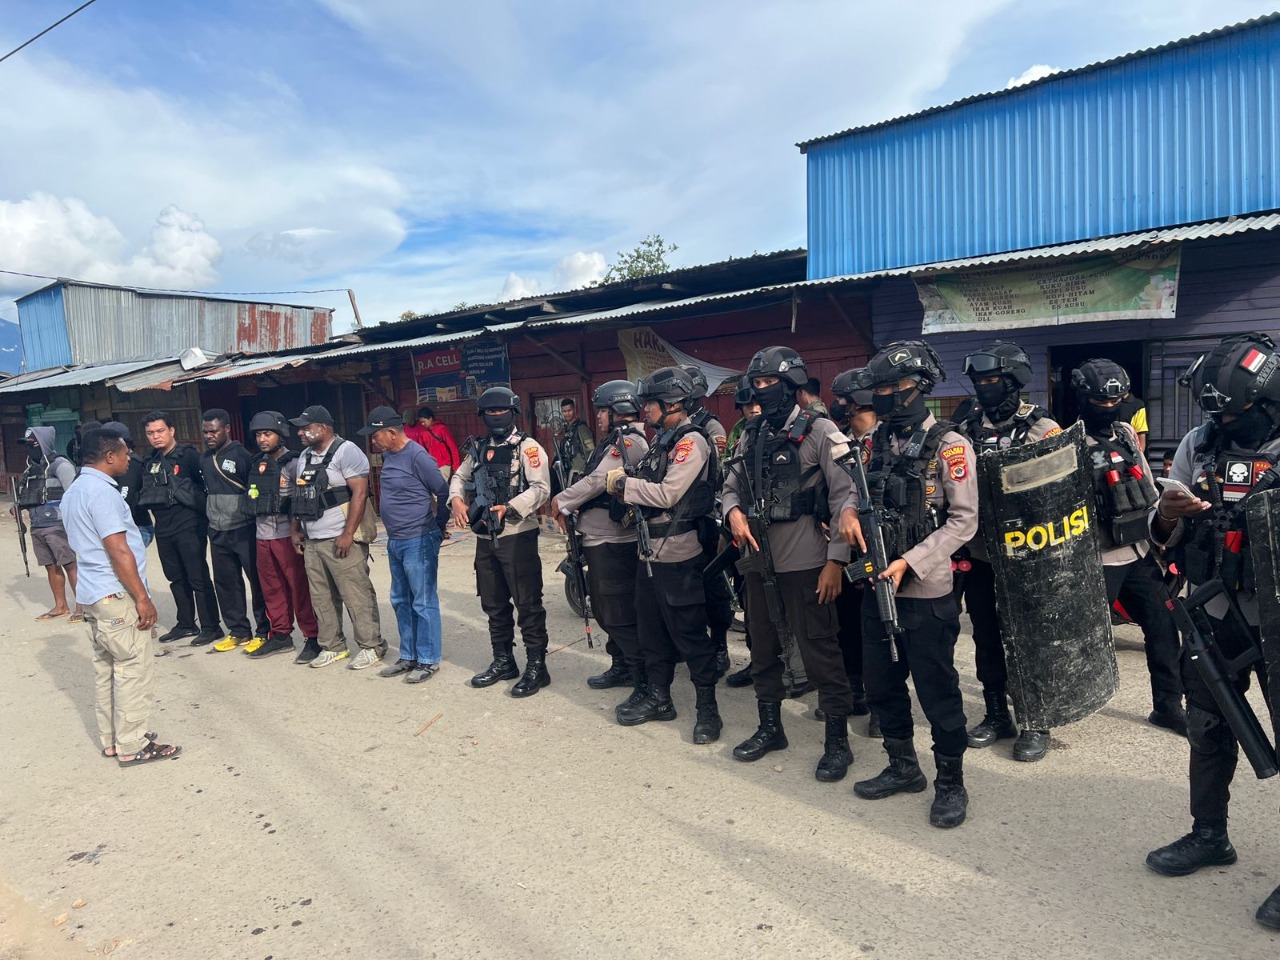 Usai warga lakukan pembakaran di Papua, polisi pastikan kondisi aman